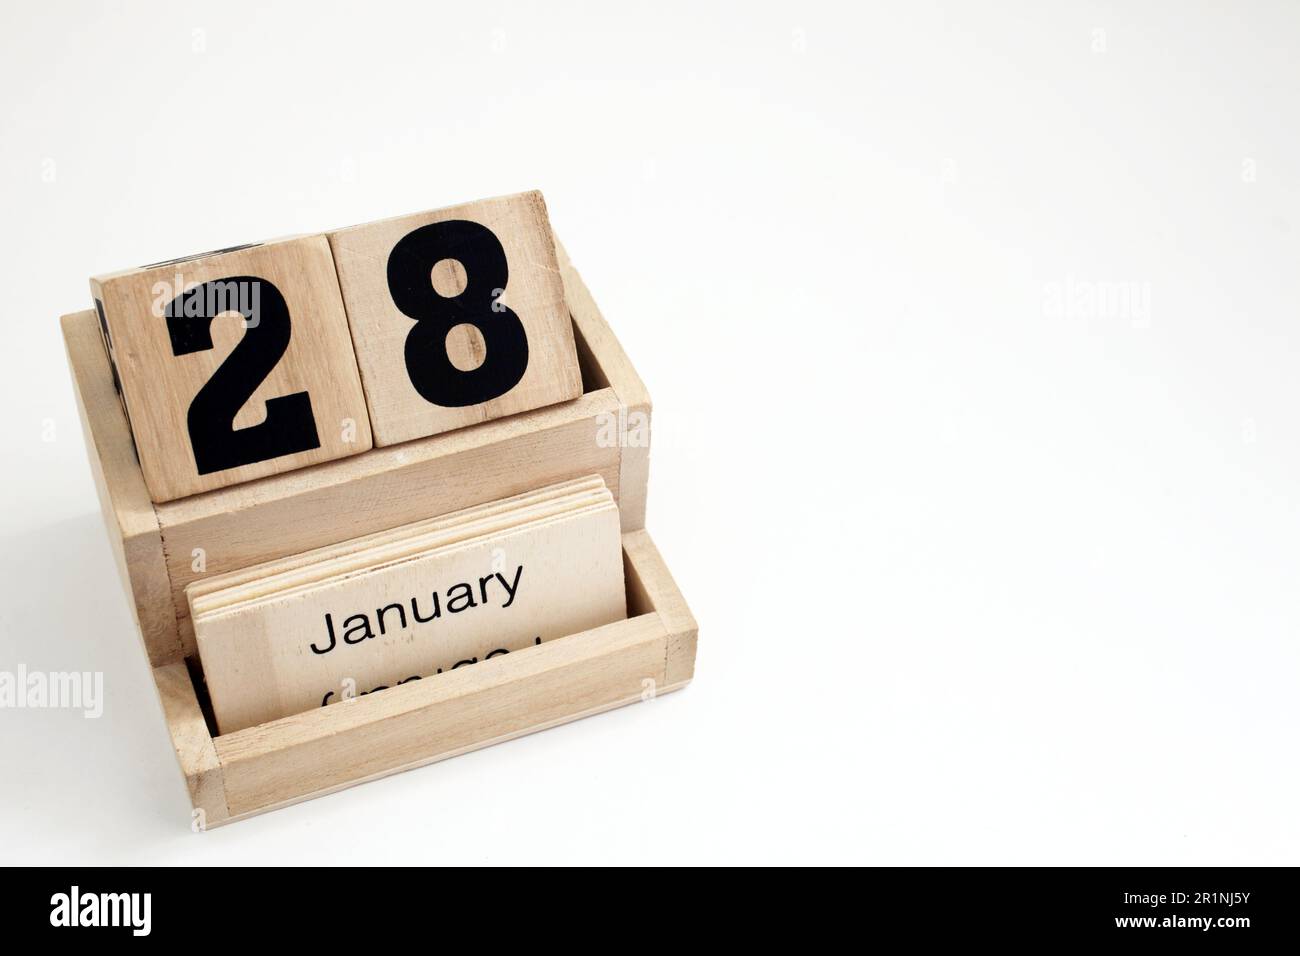 Hölzerne ewige Kalenderblöcke für Januar Stockfoto